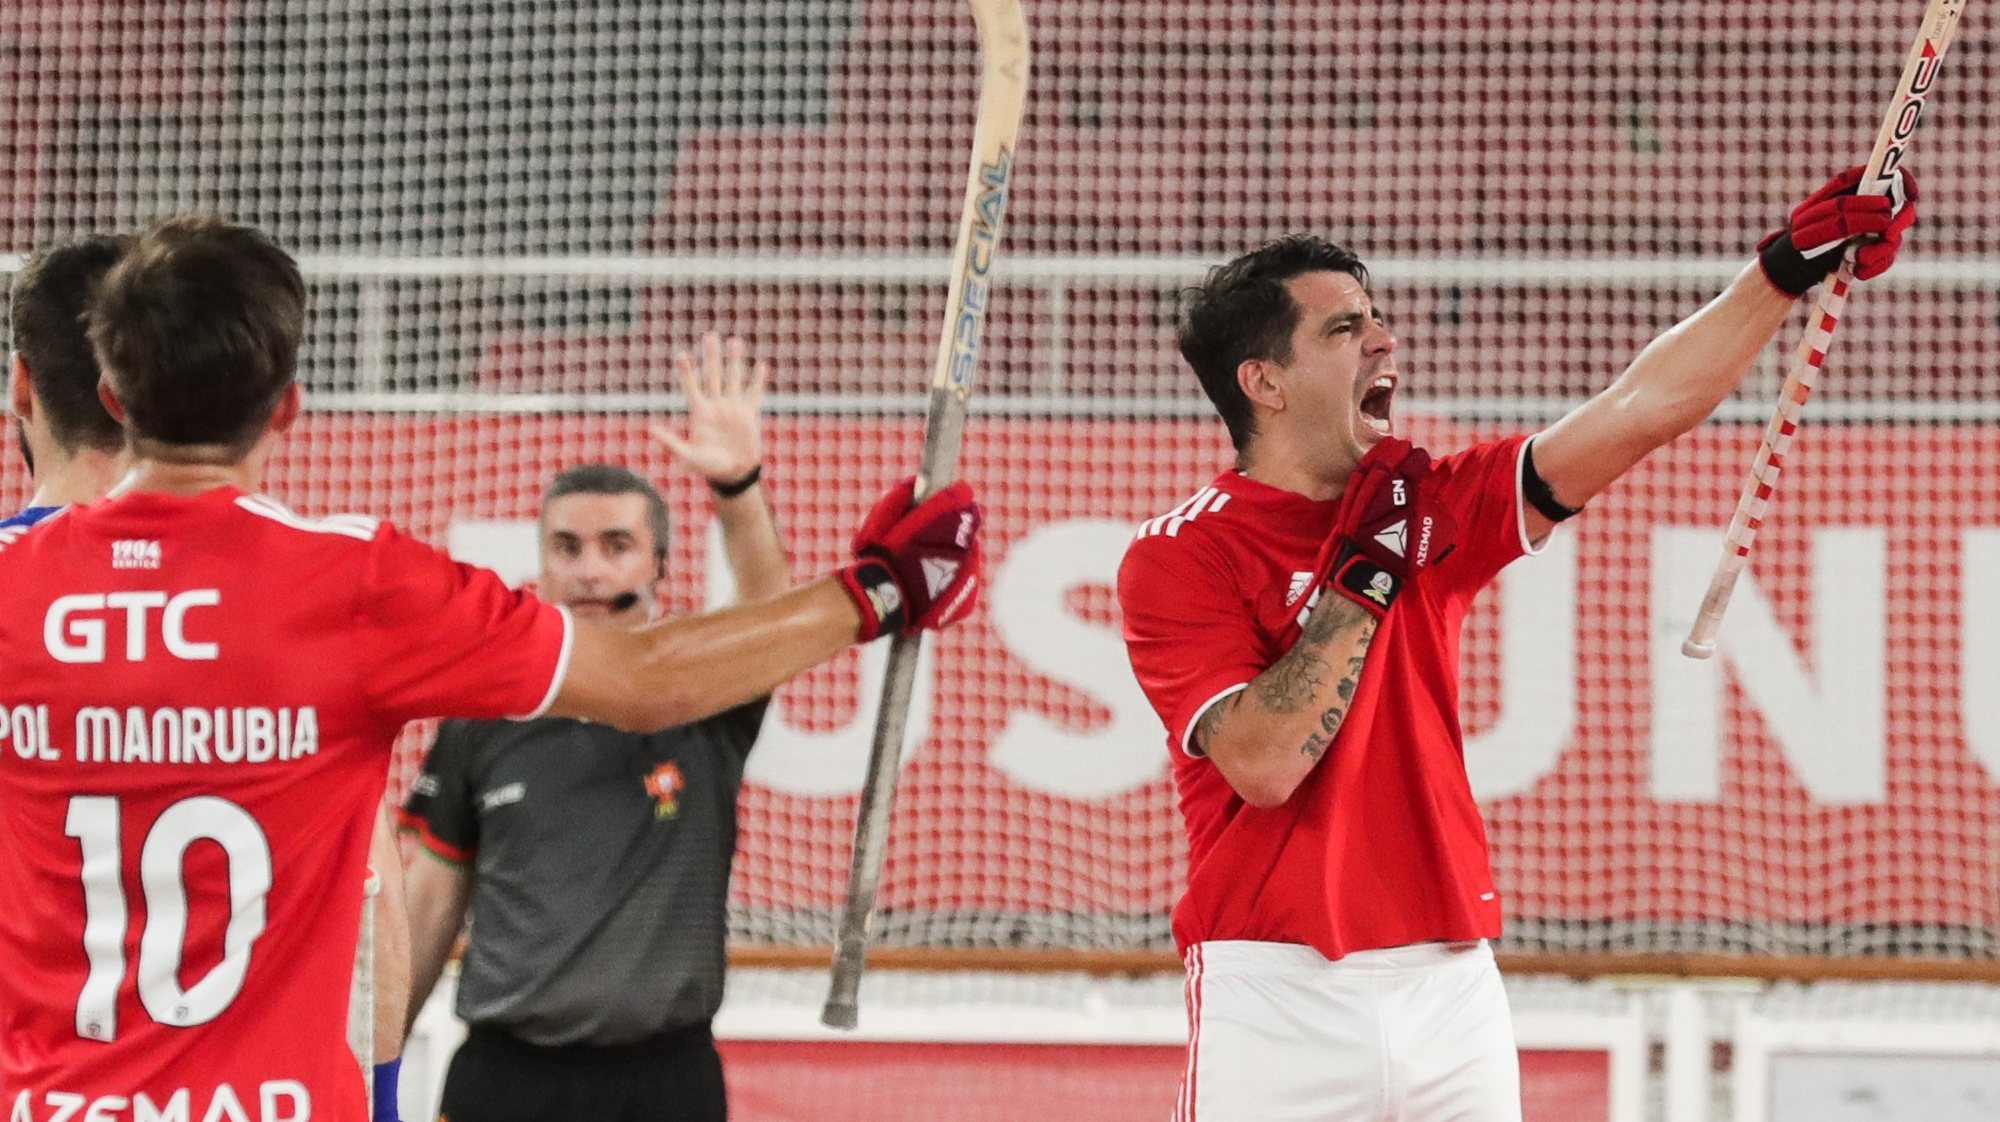 O jogador do Benfica, Carlos Nicolia festeja o seu golo contra o FC Porto durante a partida de Hoquei em Patins no Pavilhão da Luz em Lisboa, 25 de junho de 2022. TIAGO PETINGA/LUSA